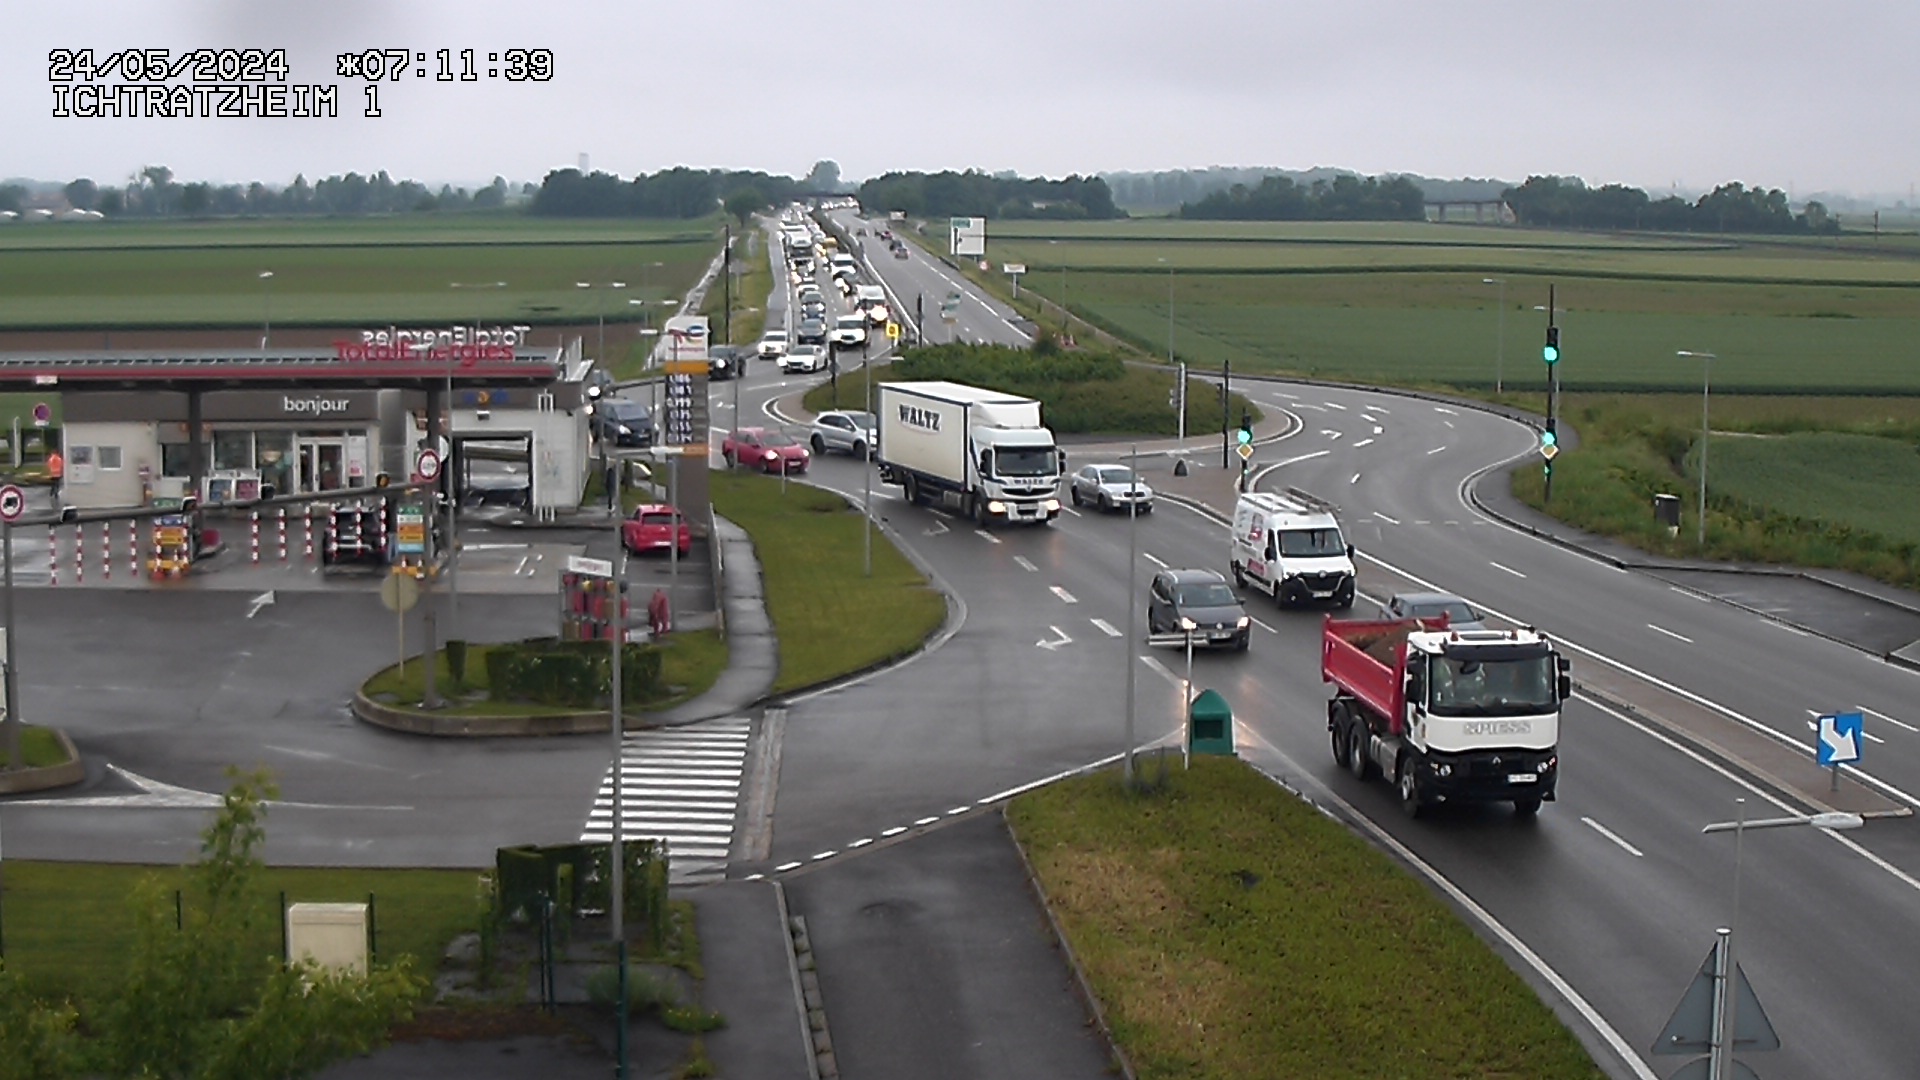 Webcam à Ichtratzheim, au sud de Strasbourg sur la D1089 (anciennement D89). Vue orientée vers Colmar